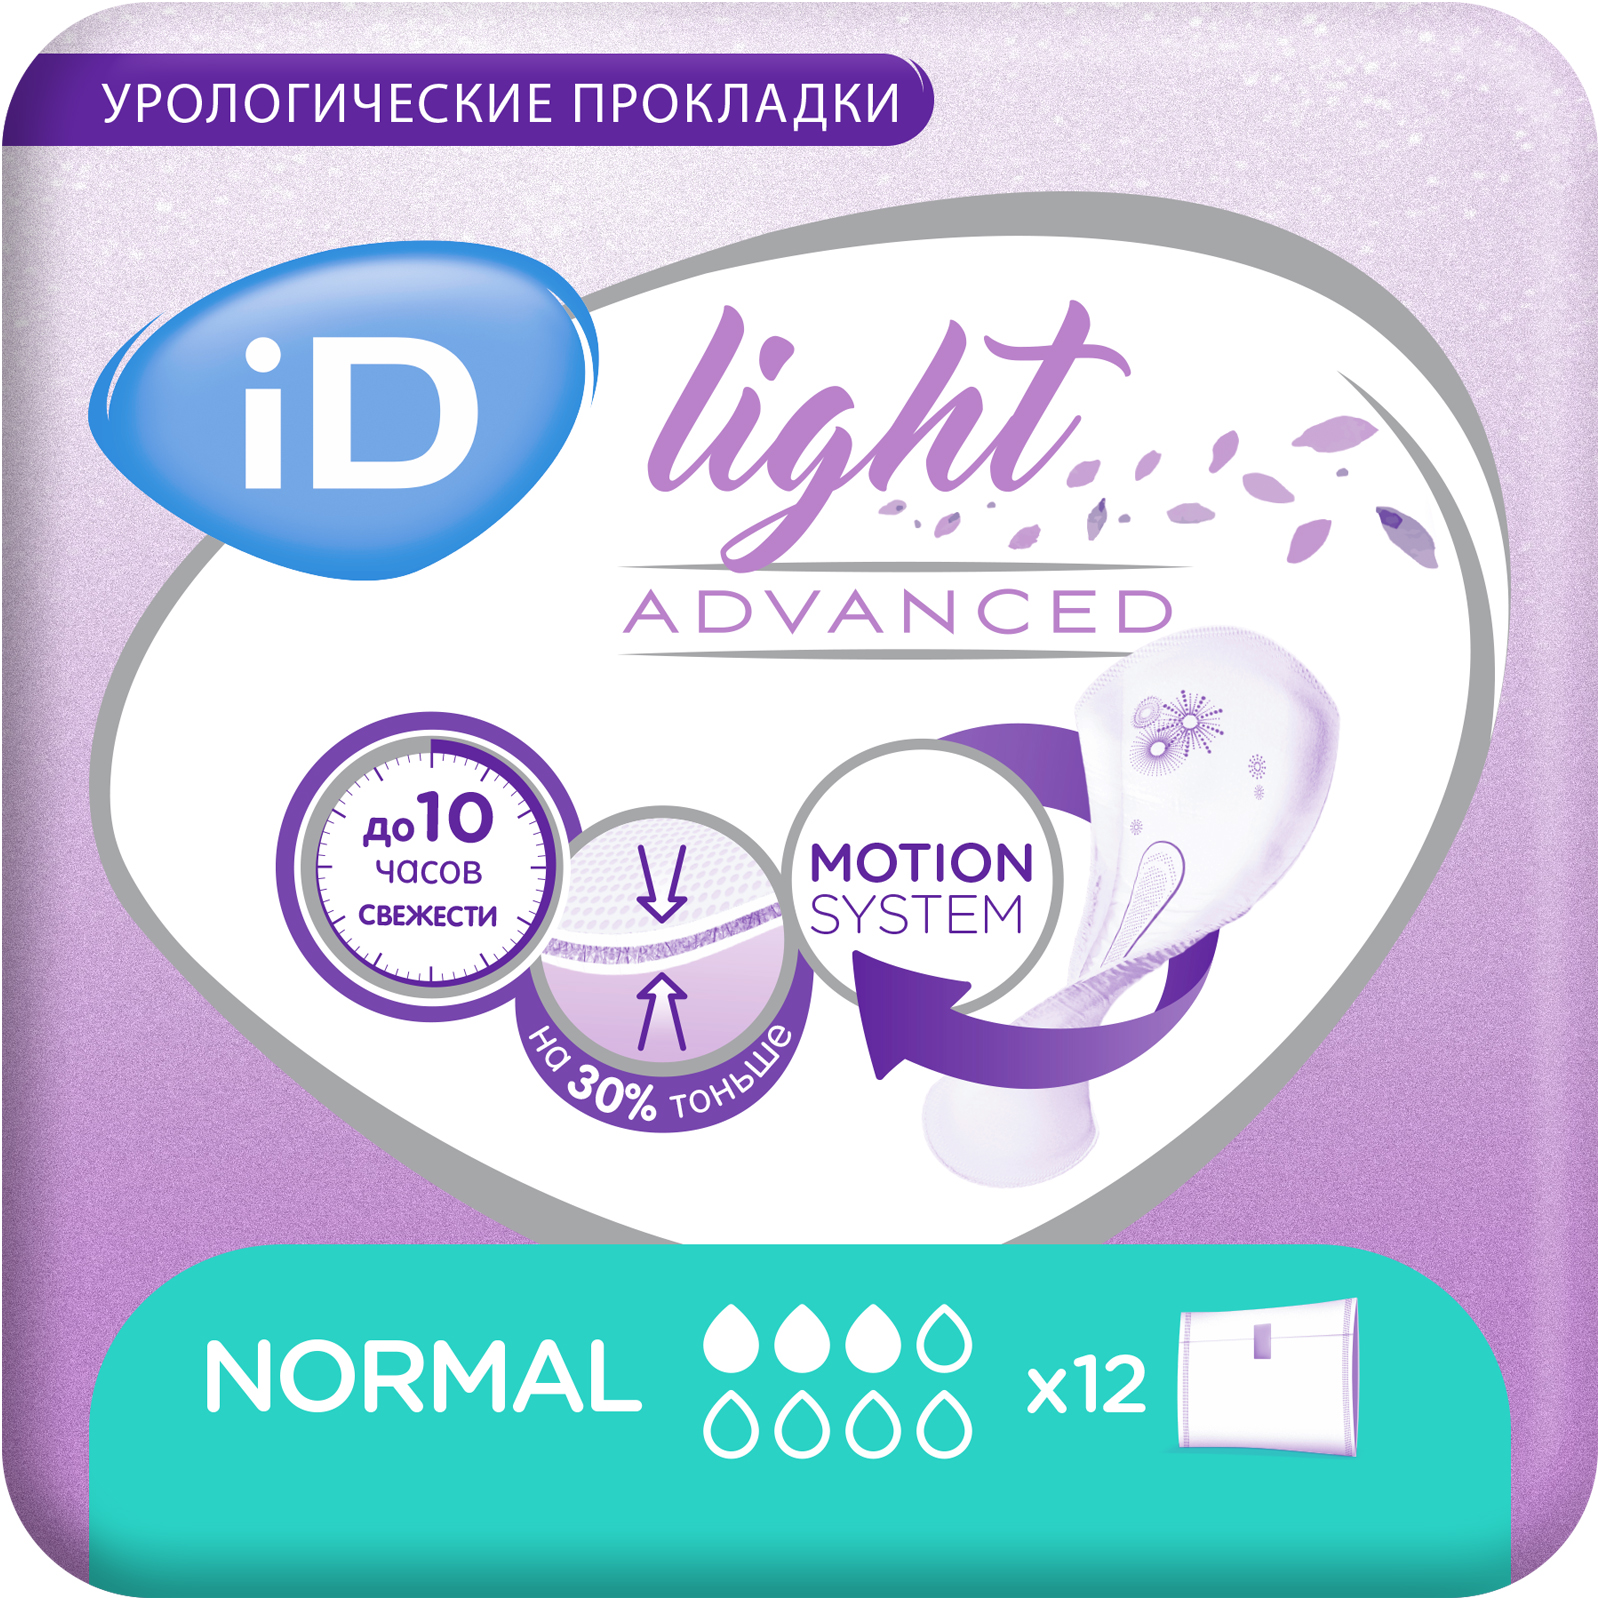 Купить Урологические прокладки iD Light Advanced Normal 12 шт.